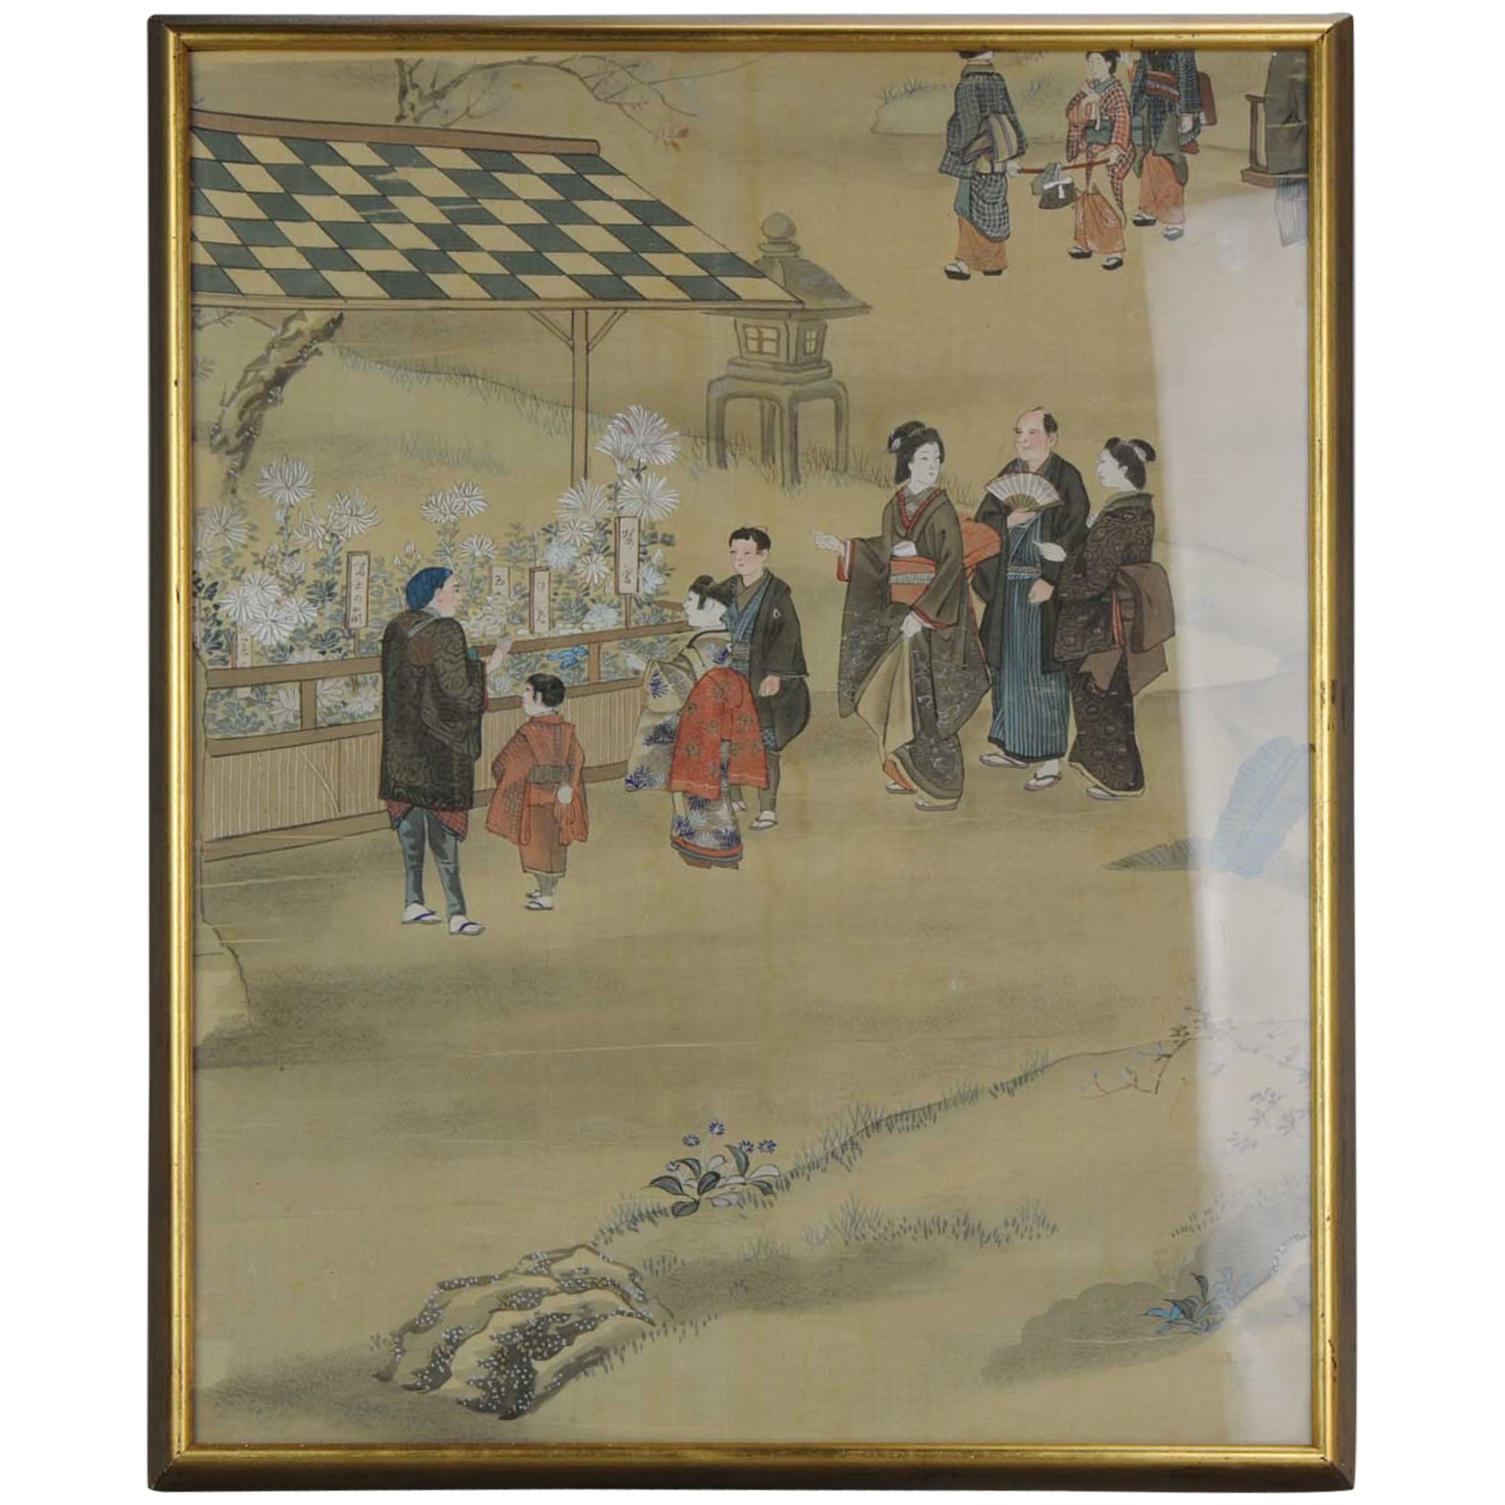 Schöne japanische Szene, Meiji-Periode, Gemälde Japan, Künstler- Village-Szene